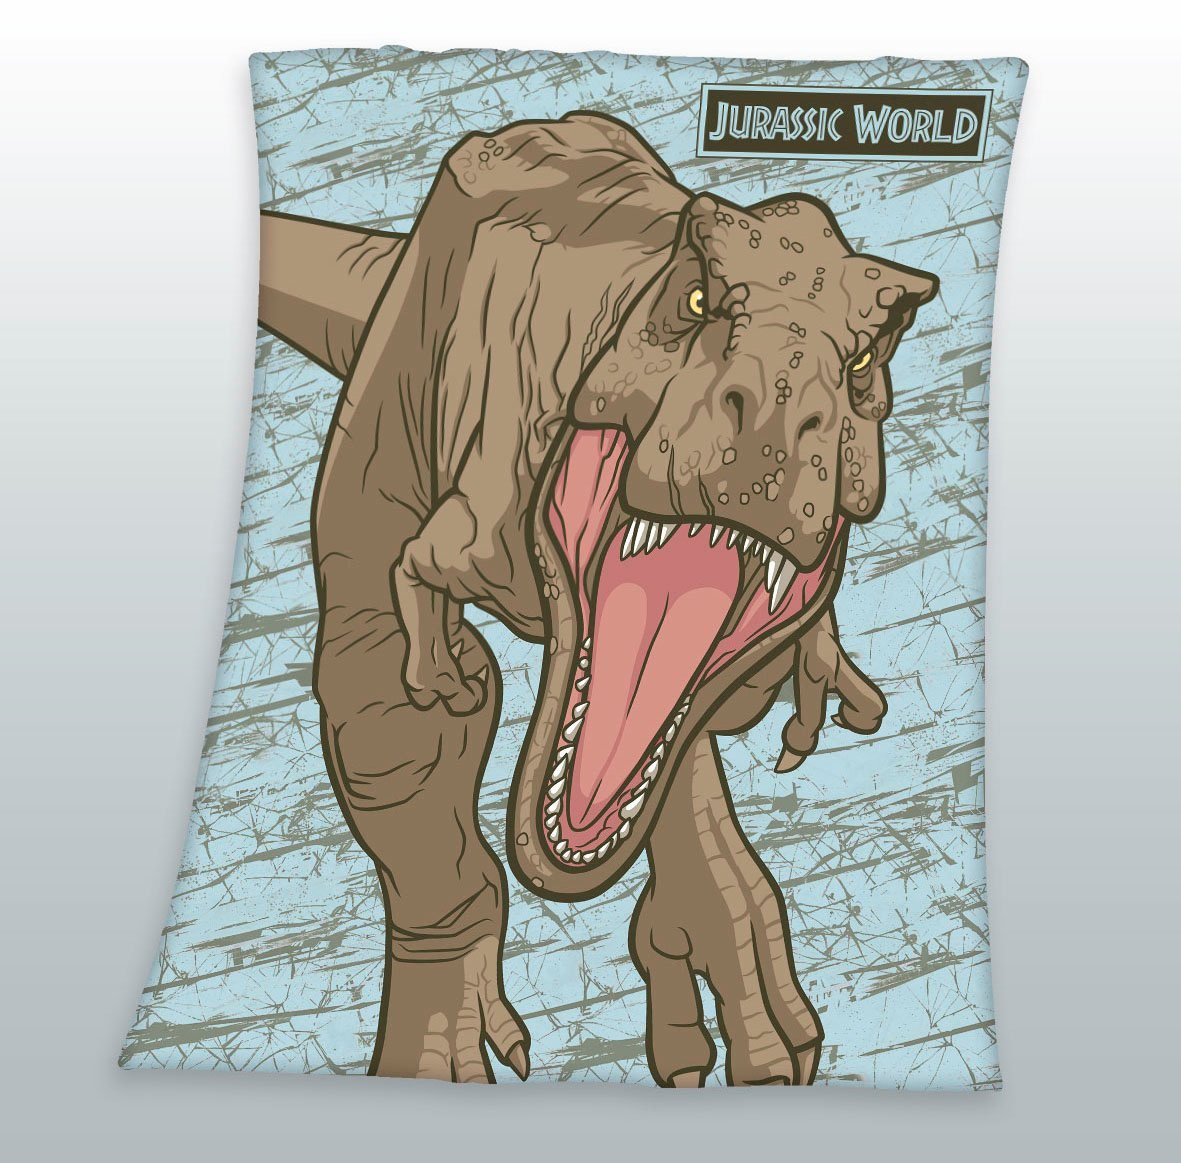 Kinderdecke Jurassic World, Jurassic World, mit tollem Jurassic World Motiv von Jurassic World